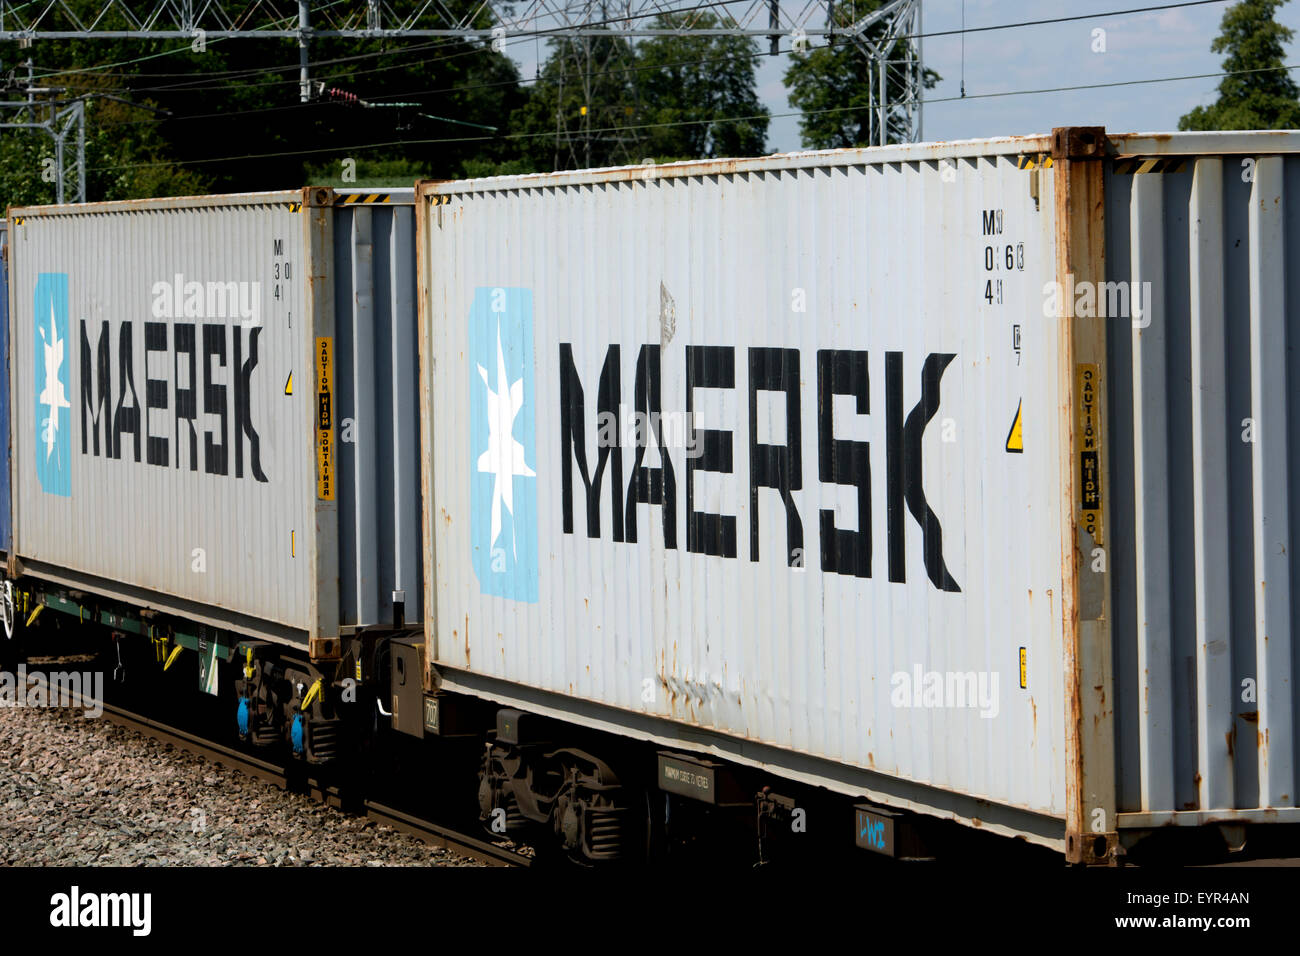 Maersk des conteneurs d'expédition sur un train, West Coast Main Line, UK Banque D'Images